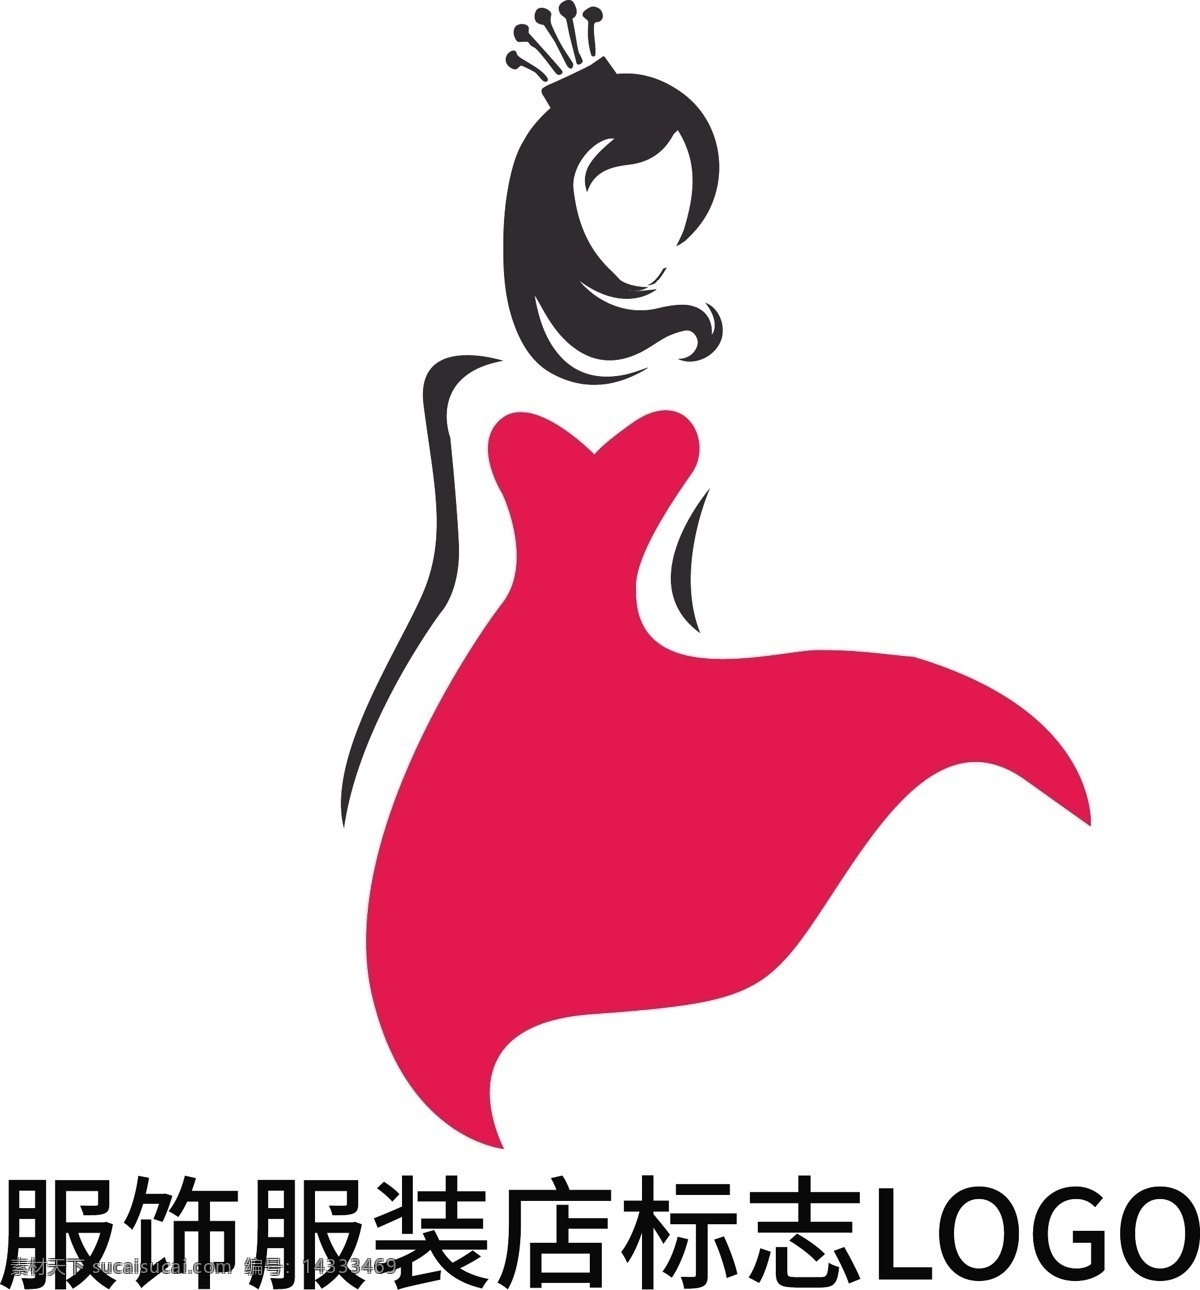 女装 服饰 服装店 标志 logo 性感 脸部 皇冠logo 头像logo 动漫logo logo设计